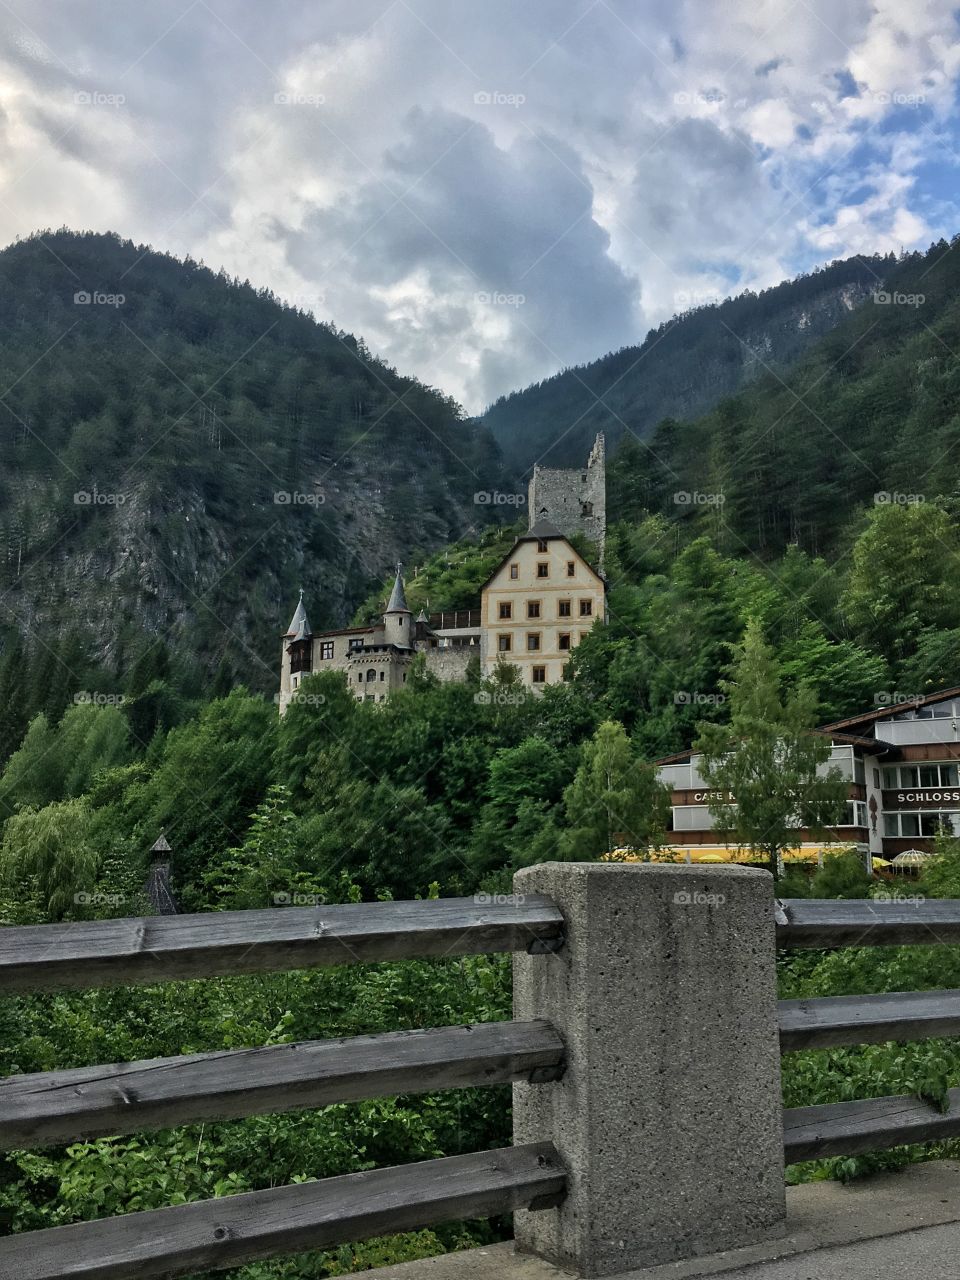 Austria hotel